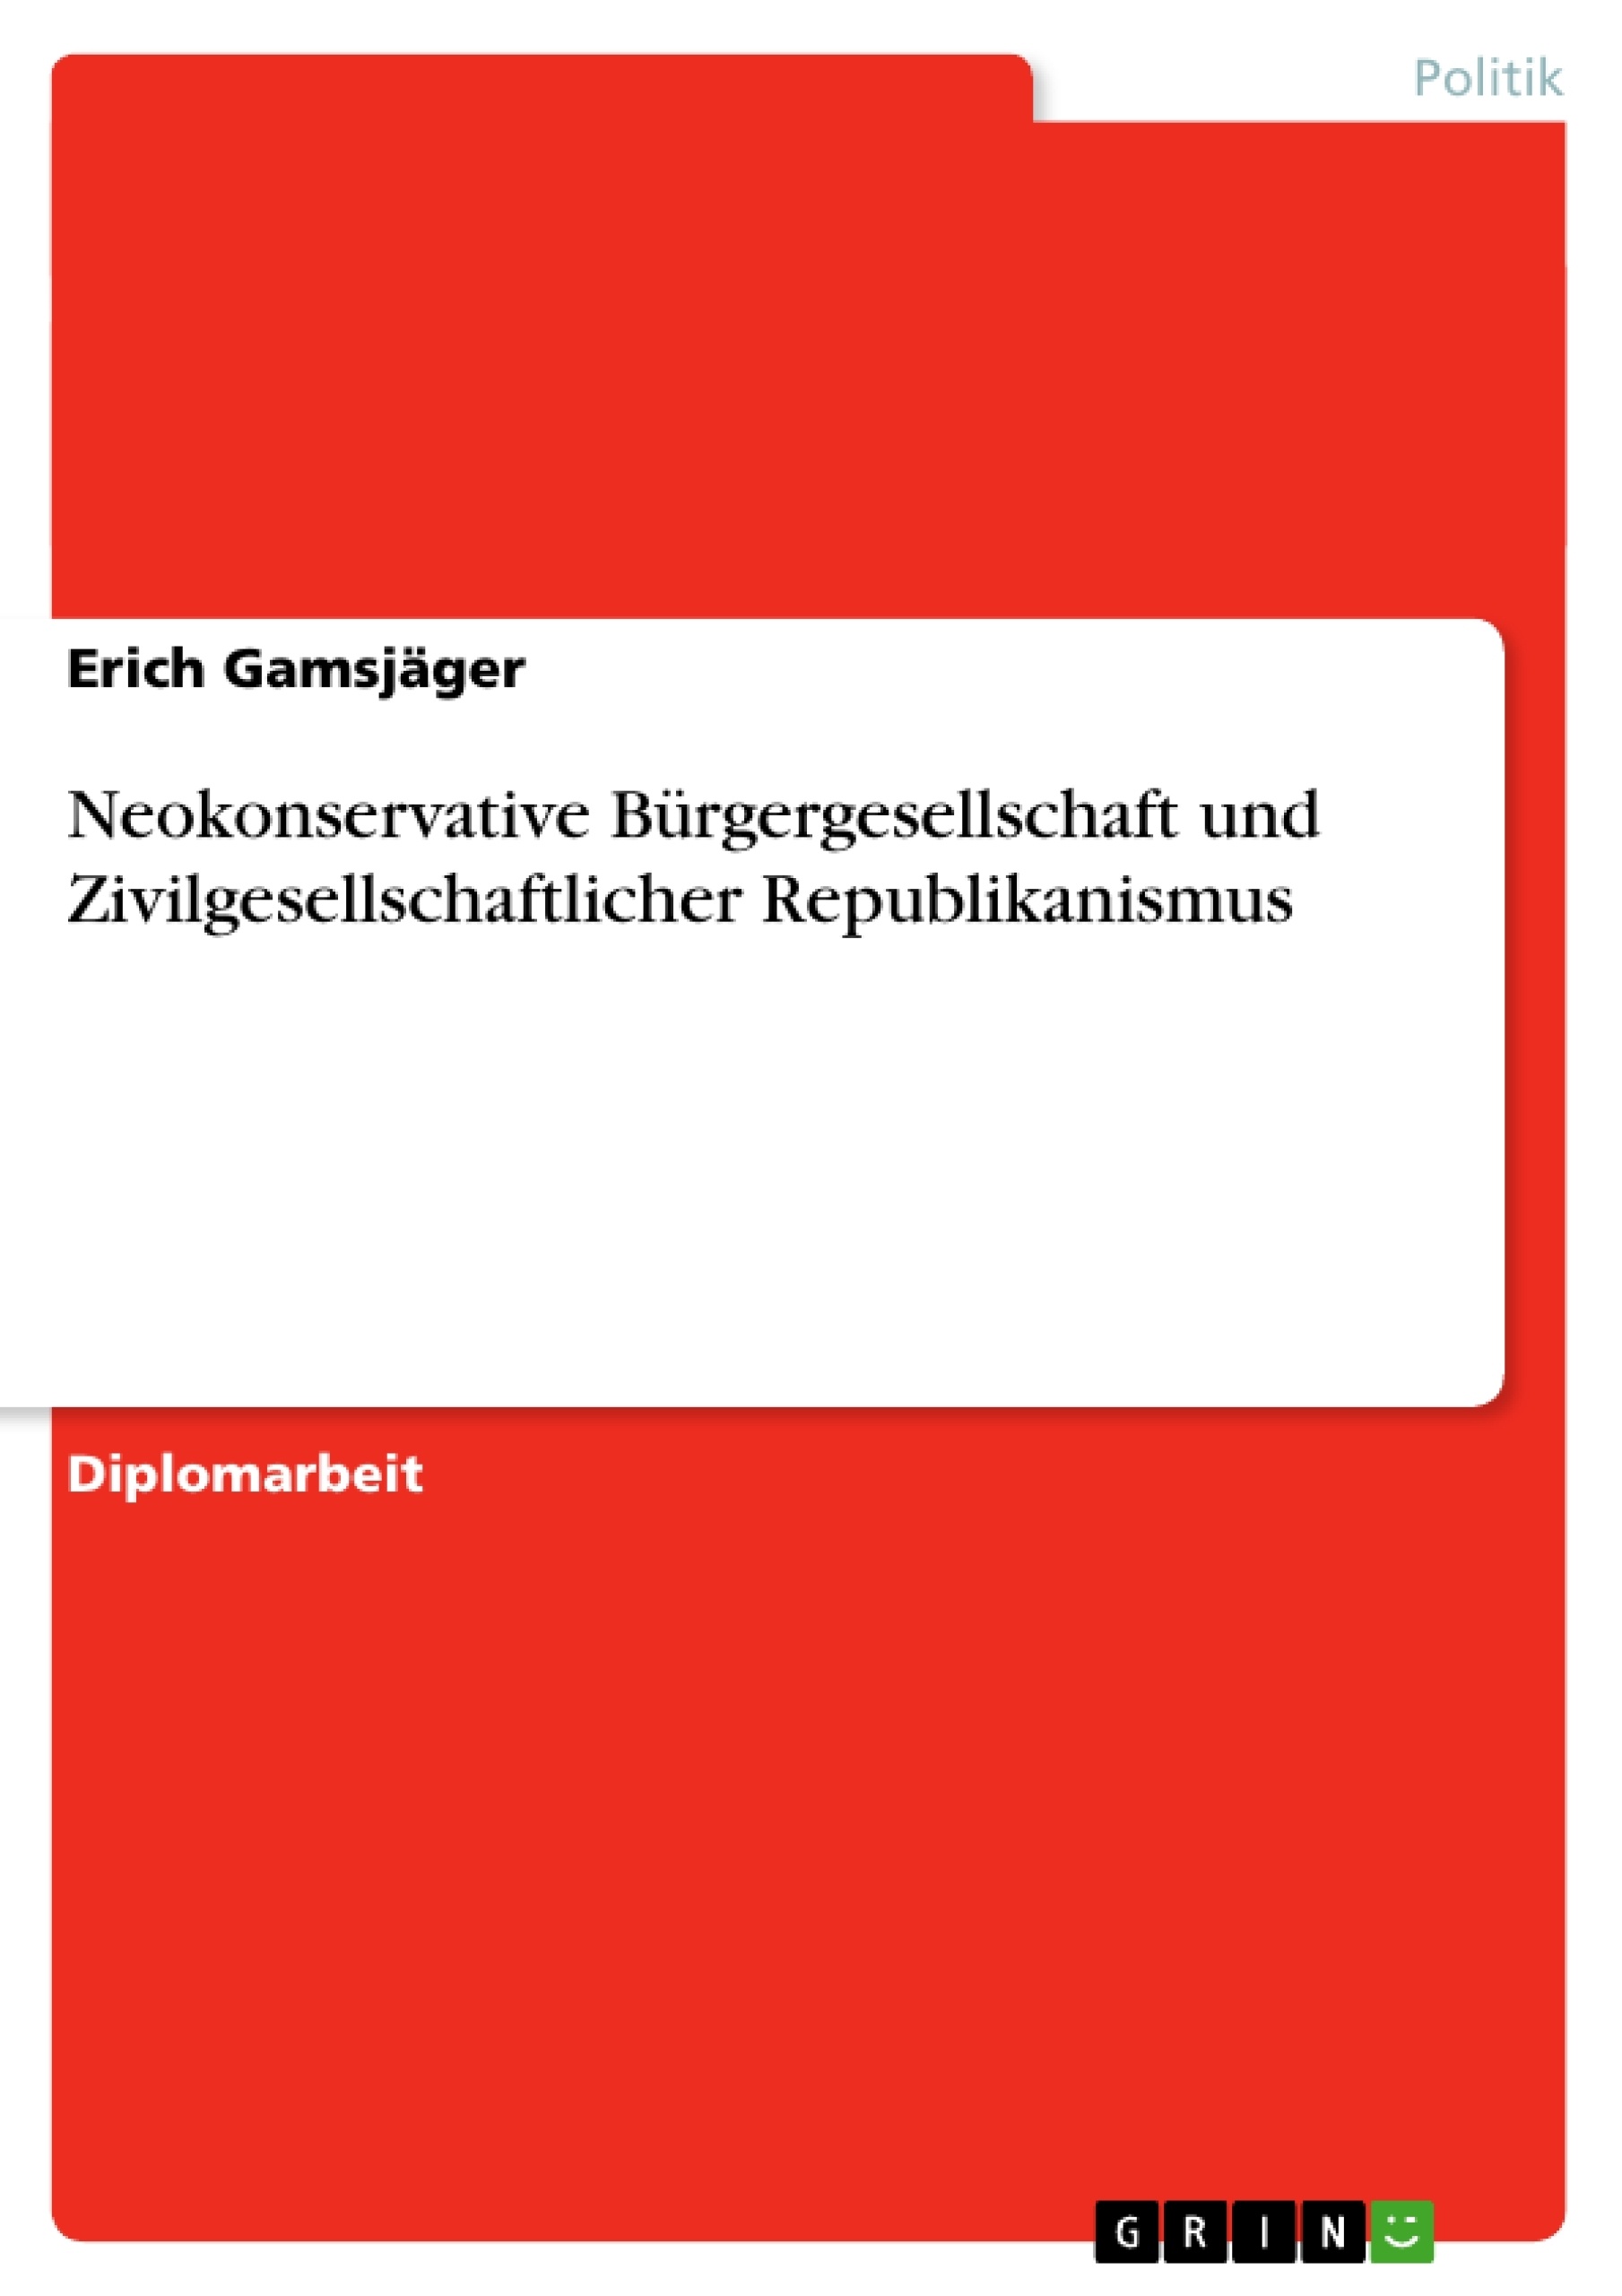 Titre: Neokonservative Bürgergesellschaft und Zivilgesellschaftlicher Republikanismus